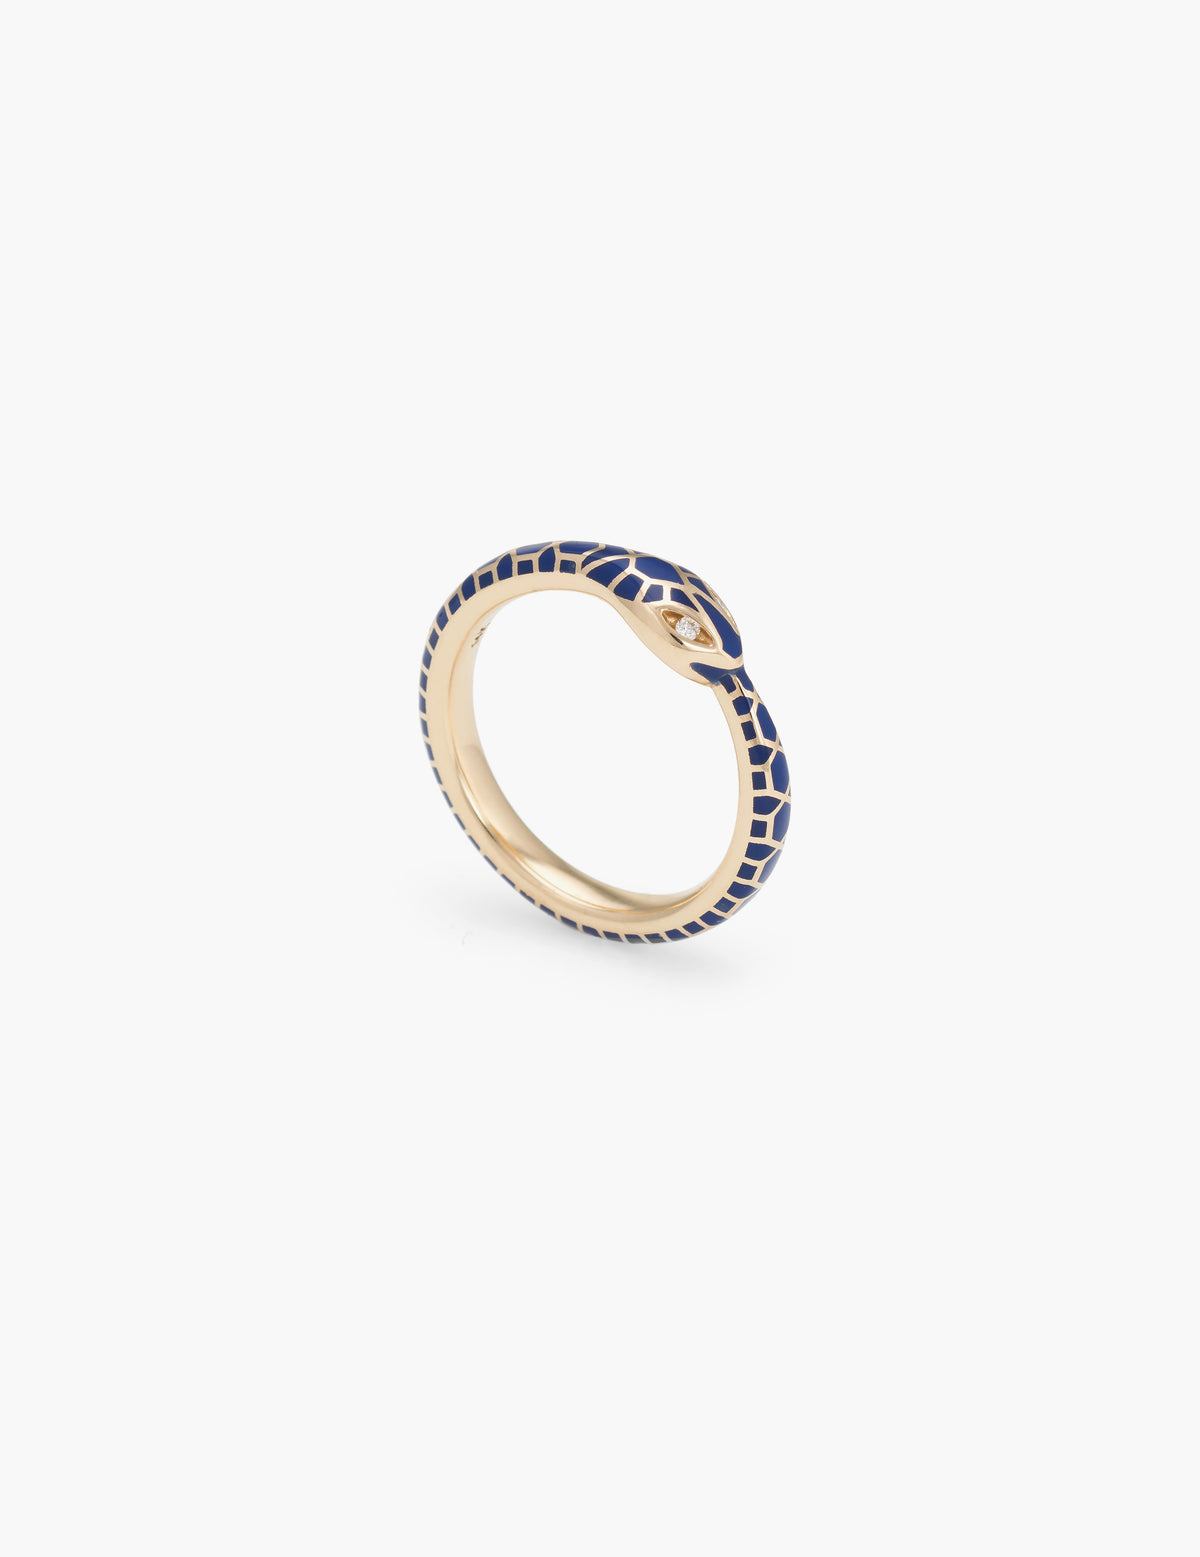 Blue Enamel Ouroboros Ring with Diamond Eyes